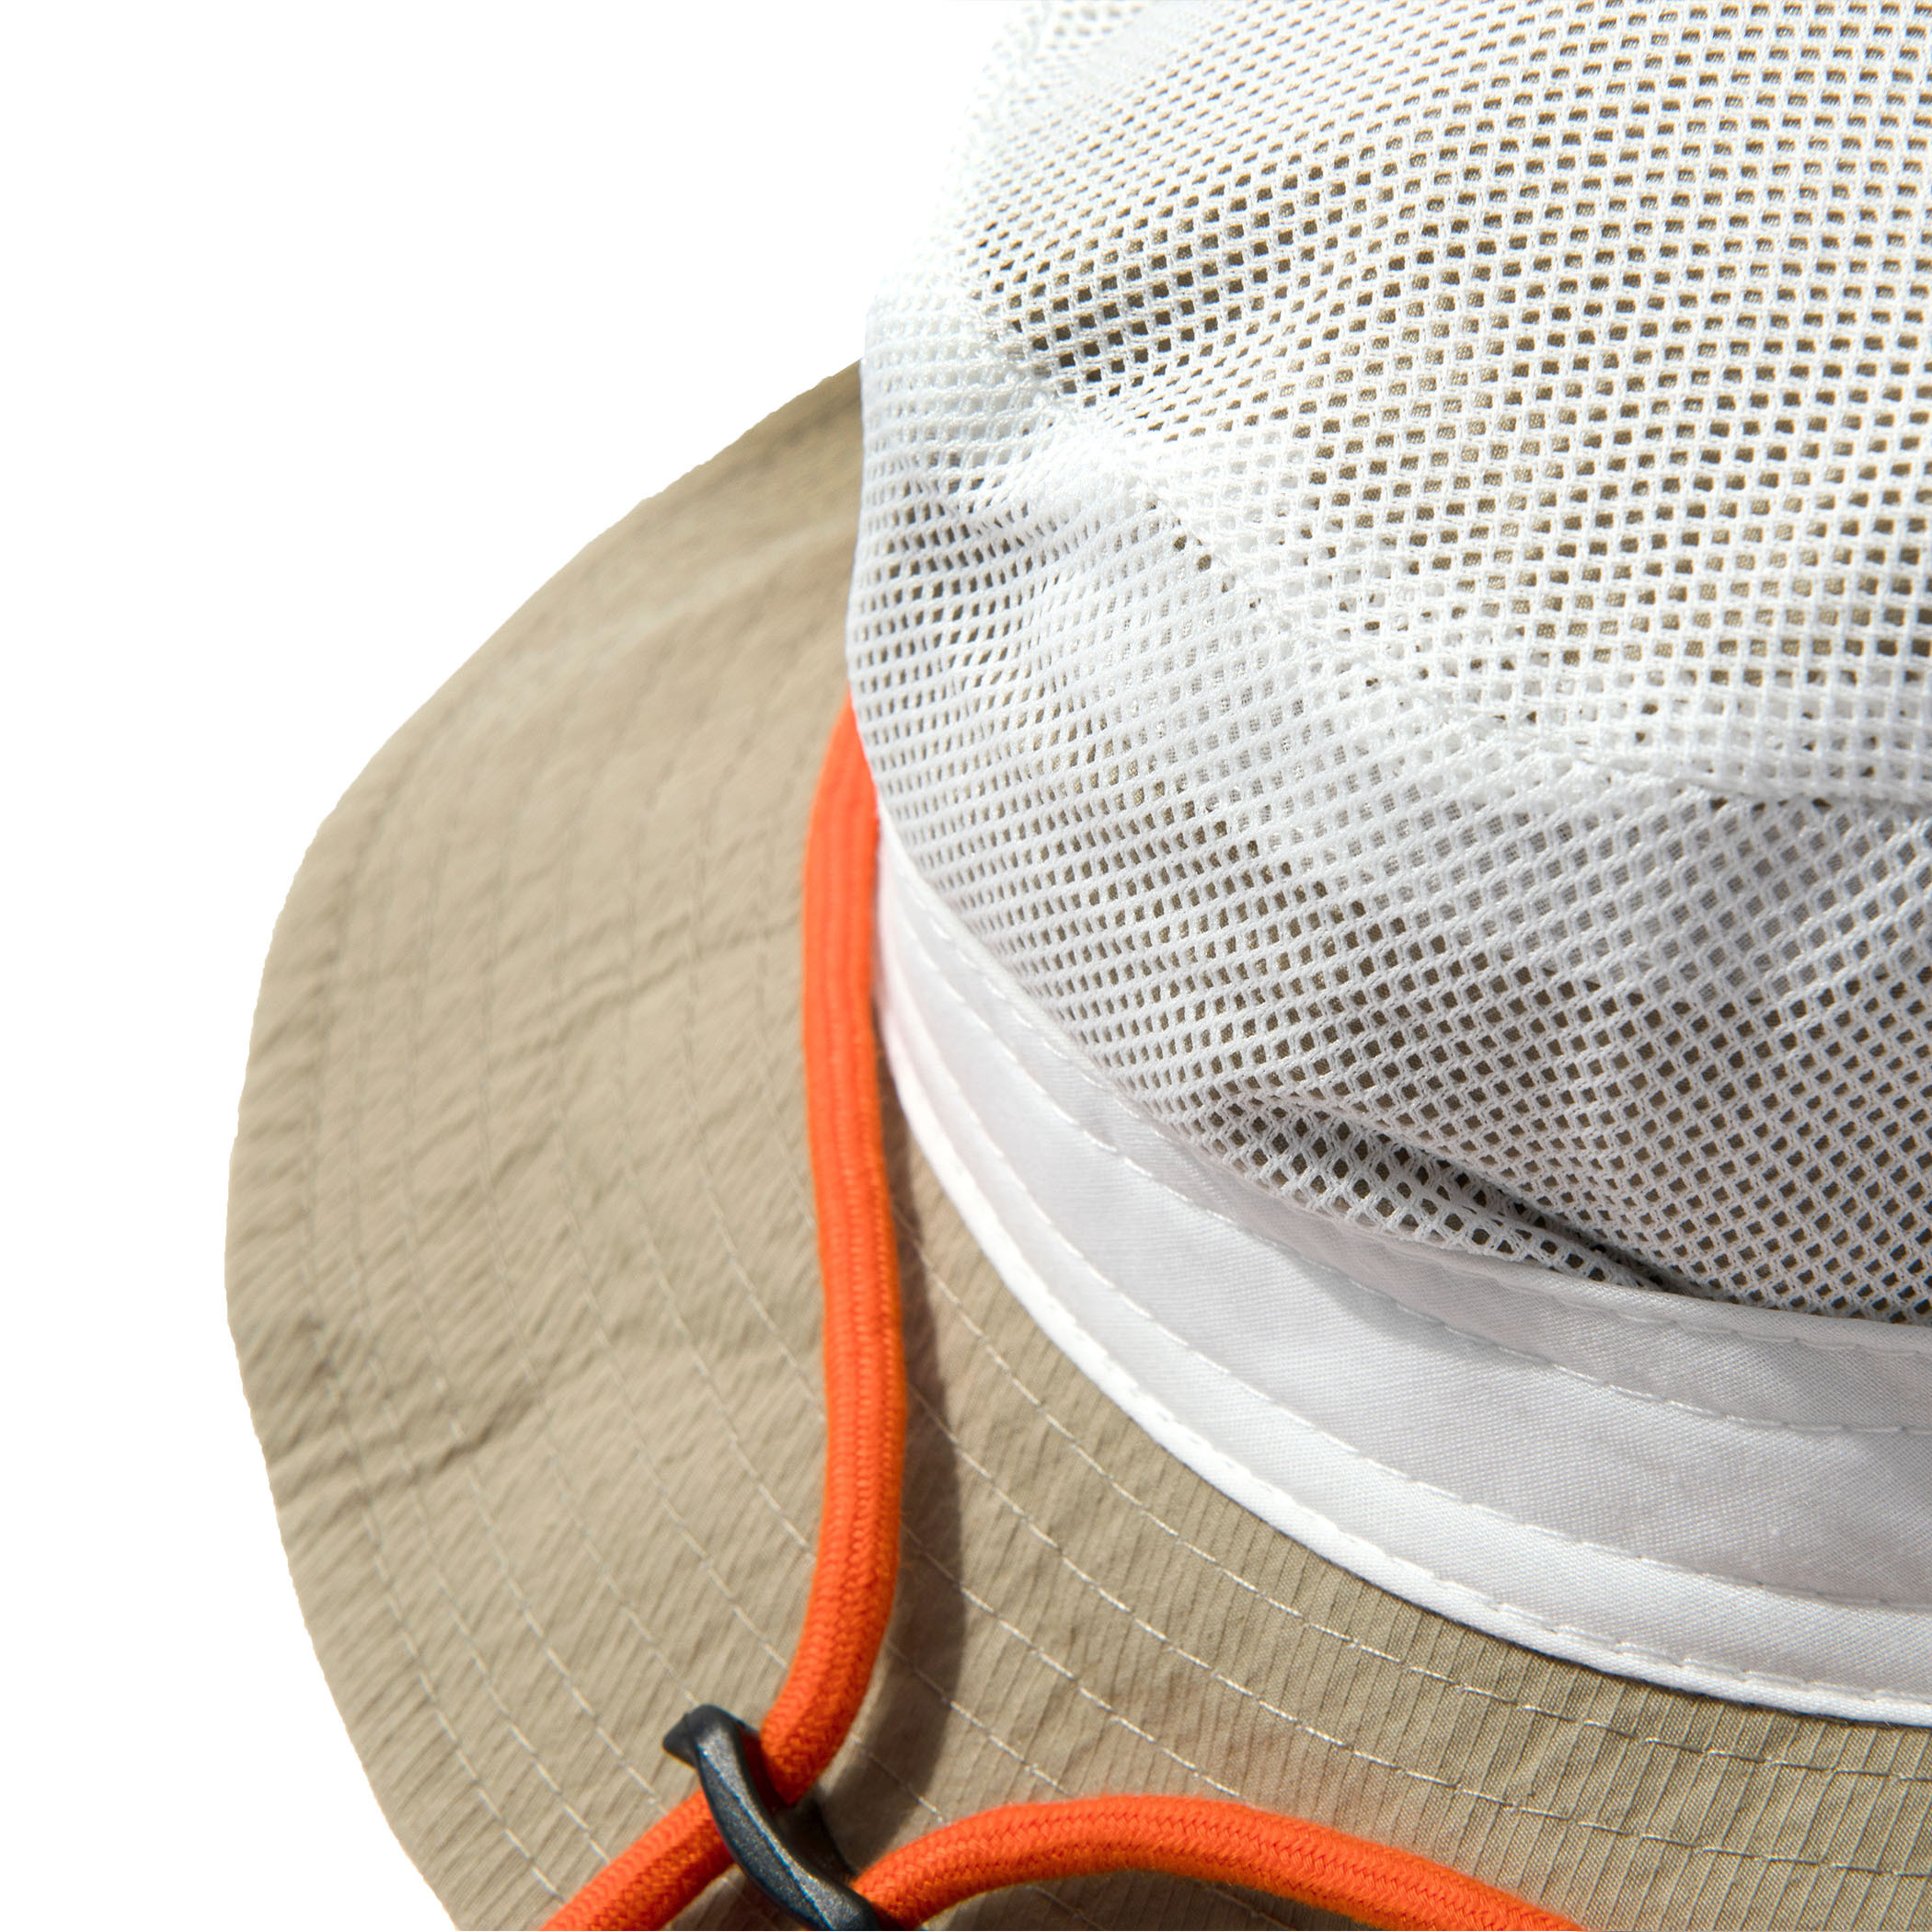 日系戶外漁夫帽新款春夏季露營登山出遊休閒遮陽透氣漁夫帽